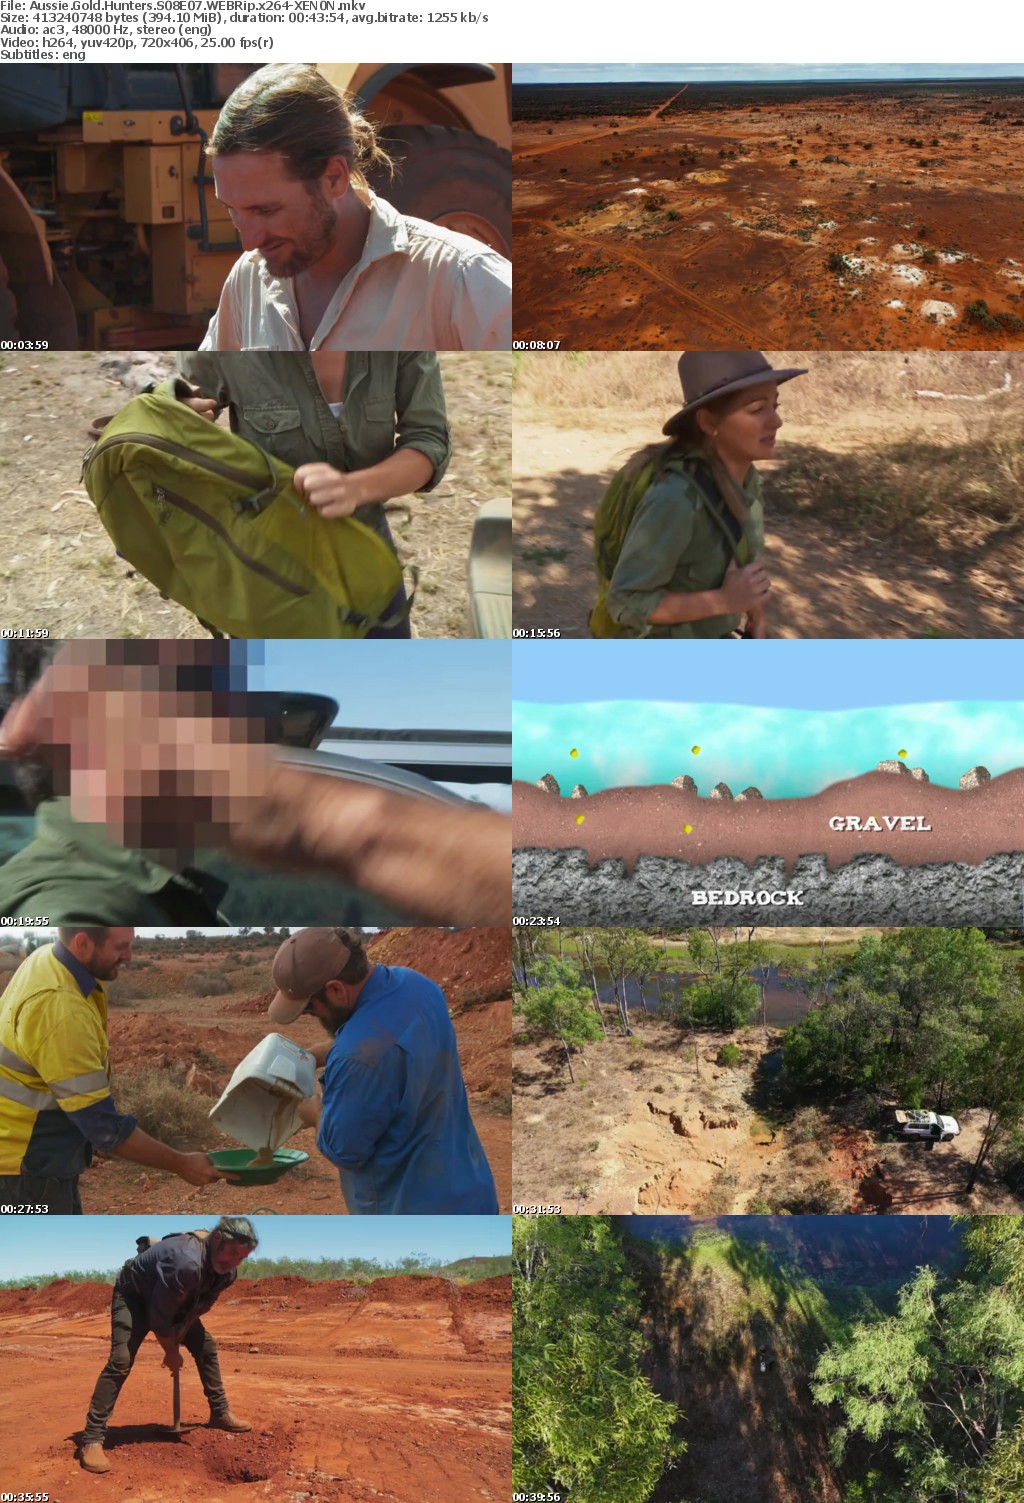 Aussie Gold Hunters S08E07 WEBRip x264-XEN0N